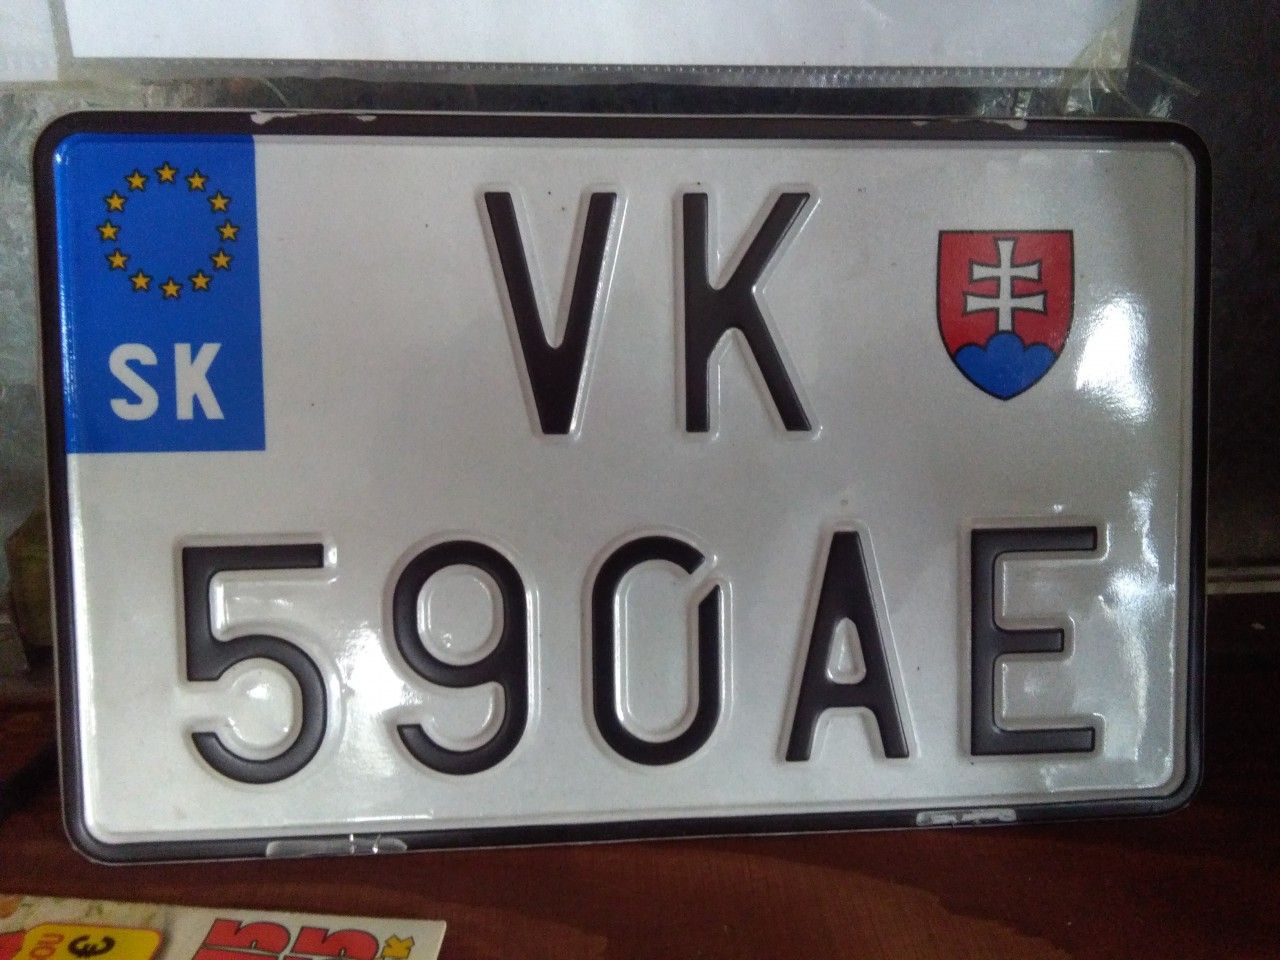 VK-590AE